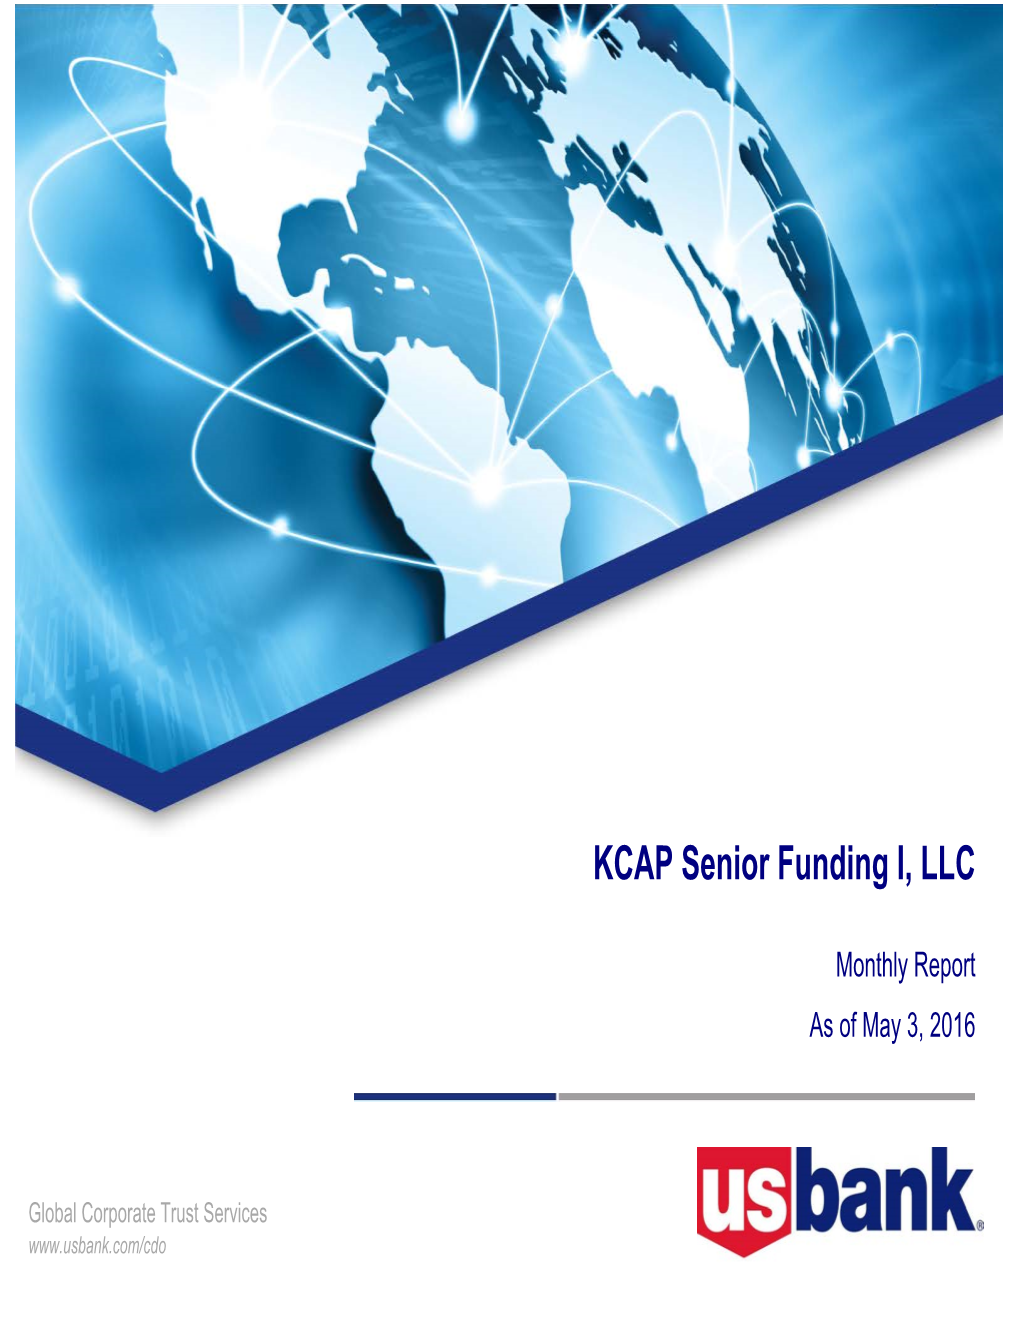 KCAP Senior Funding I, LLC